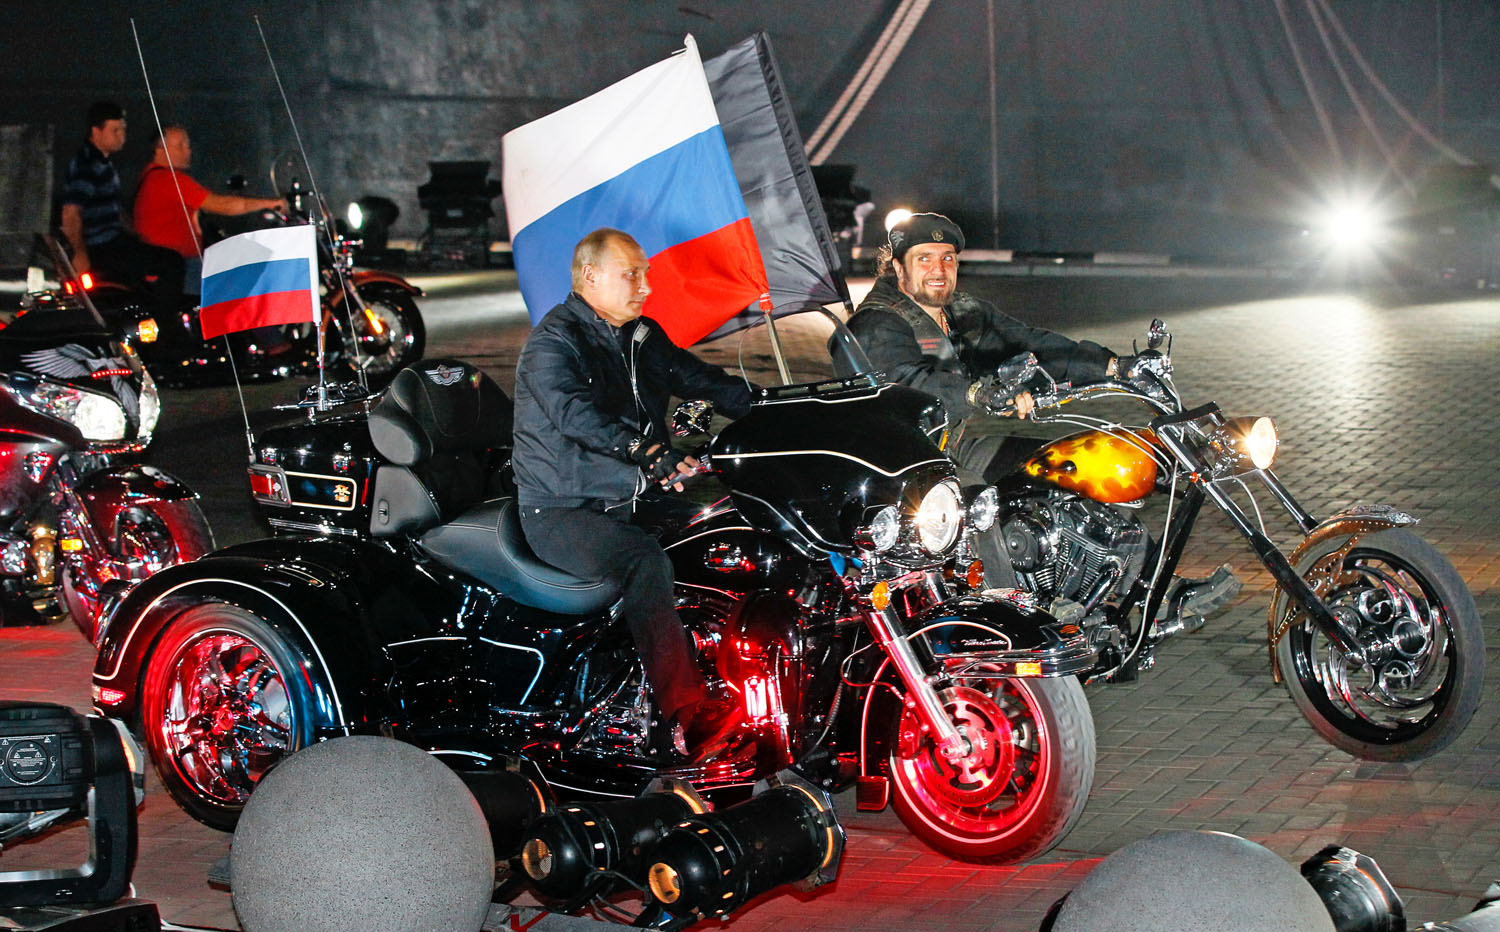 Éjszakai száguldás. Putyin és Zaldosztanov Novorosszijszkban 2011 augusztusában